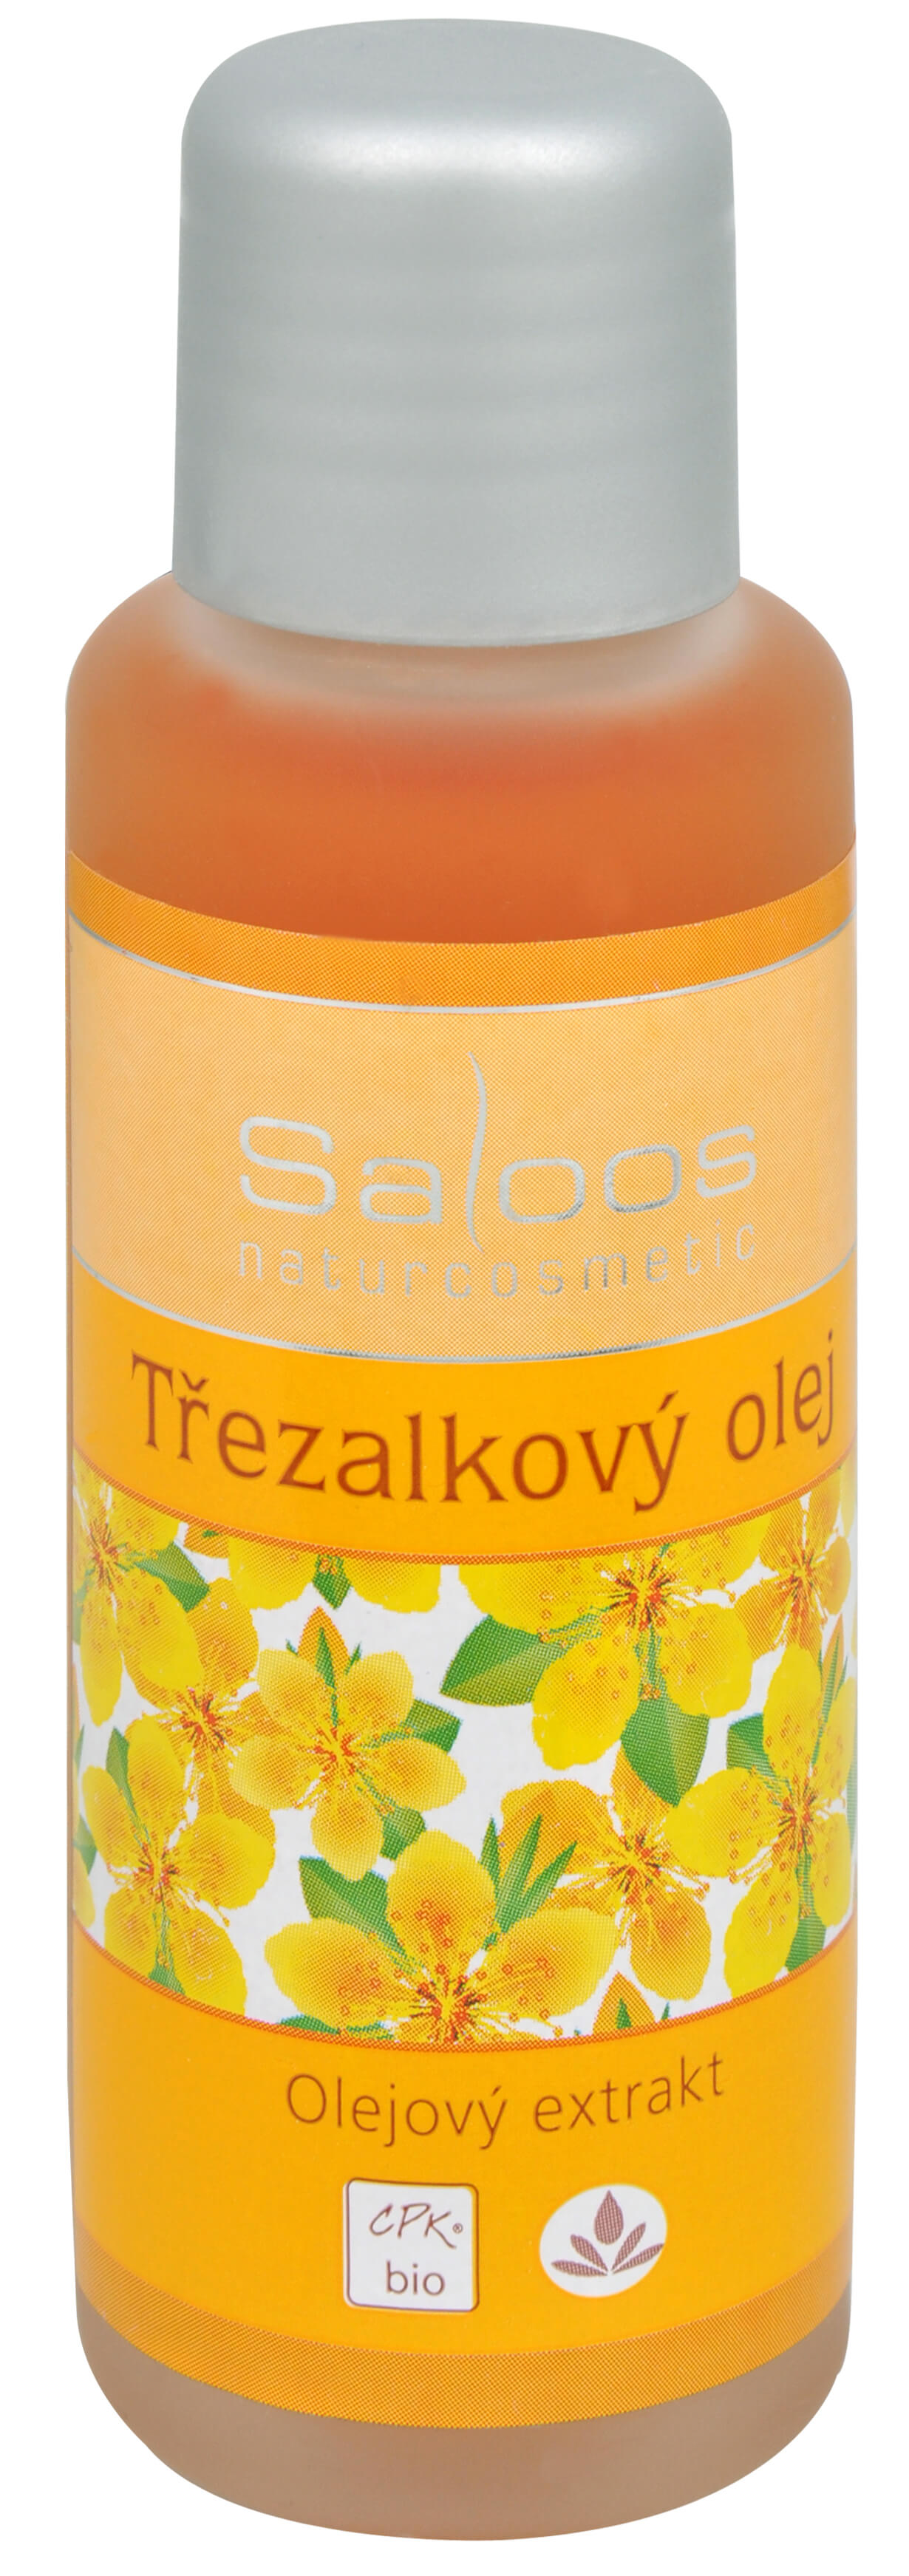 Zobrazit detail výrobku Saloos Bio Třezalkový olej (olejový extrakt) 250 ml